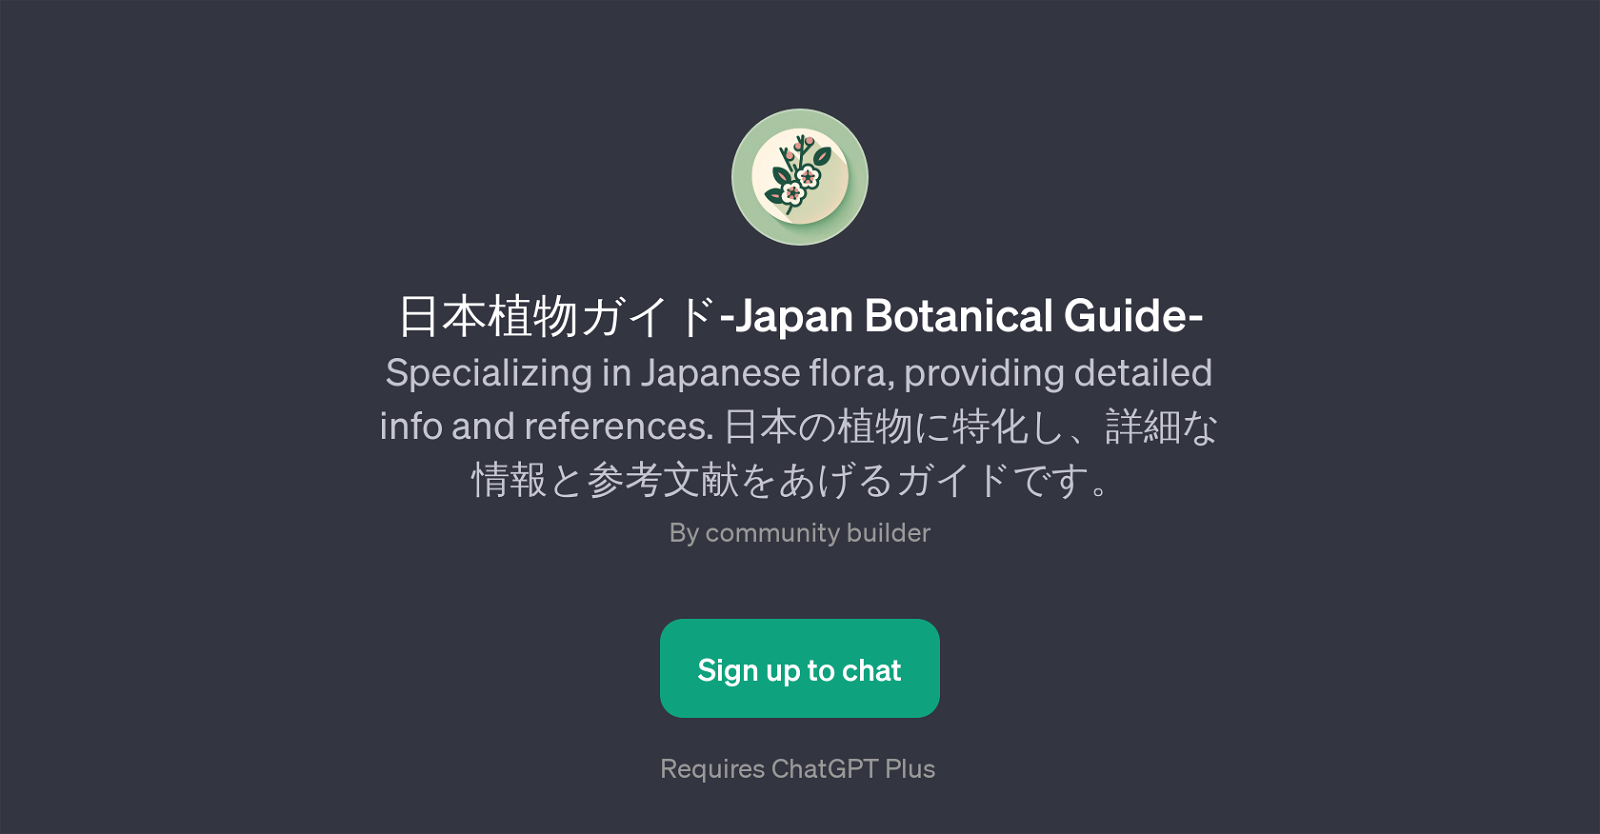 Japan Botanical Guide website